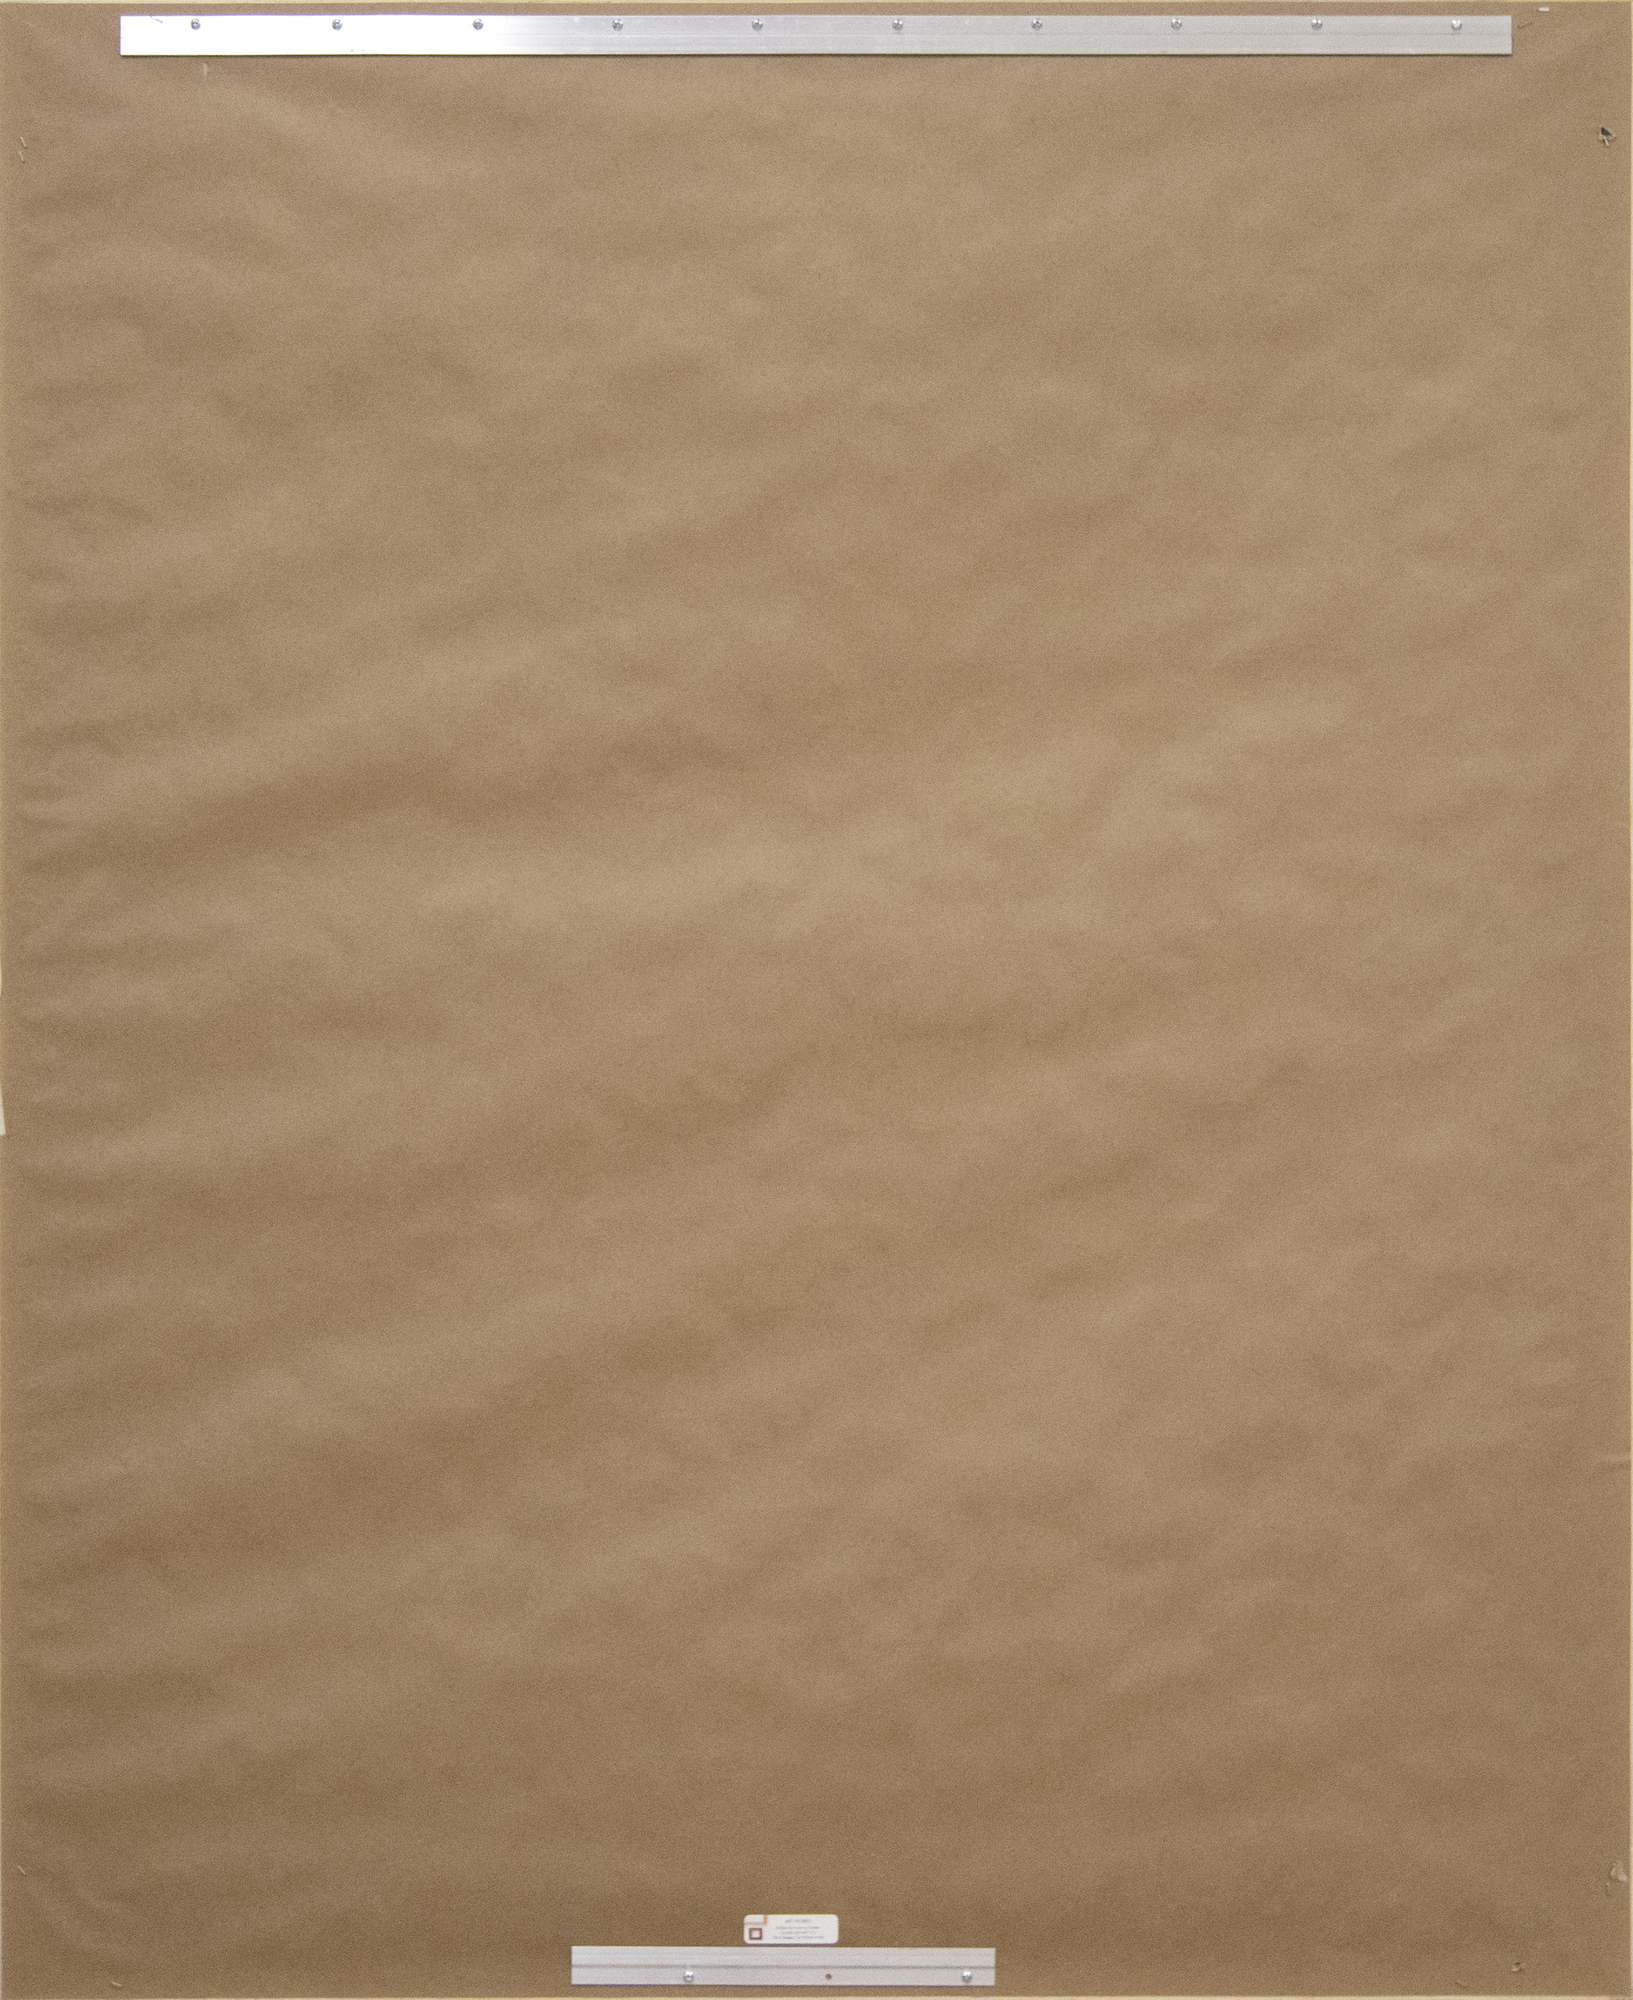 JAE KON PARK - Sans titre - huile sur toile - 45 3/4 x 35 1/2 po.